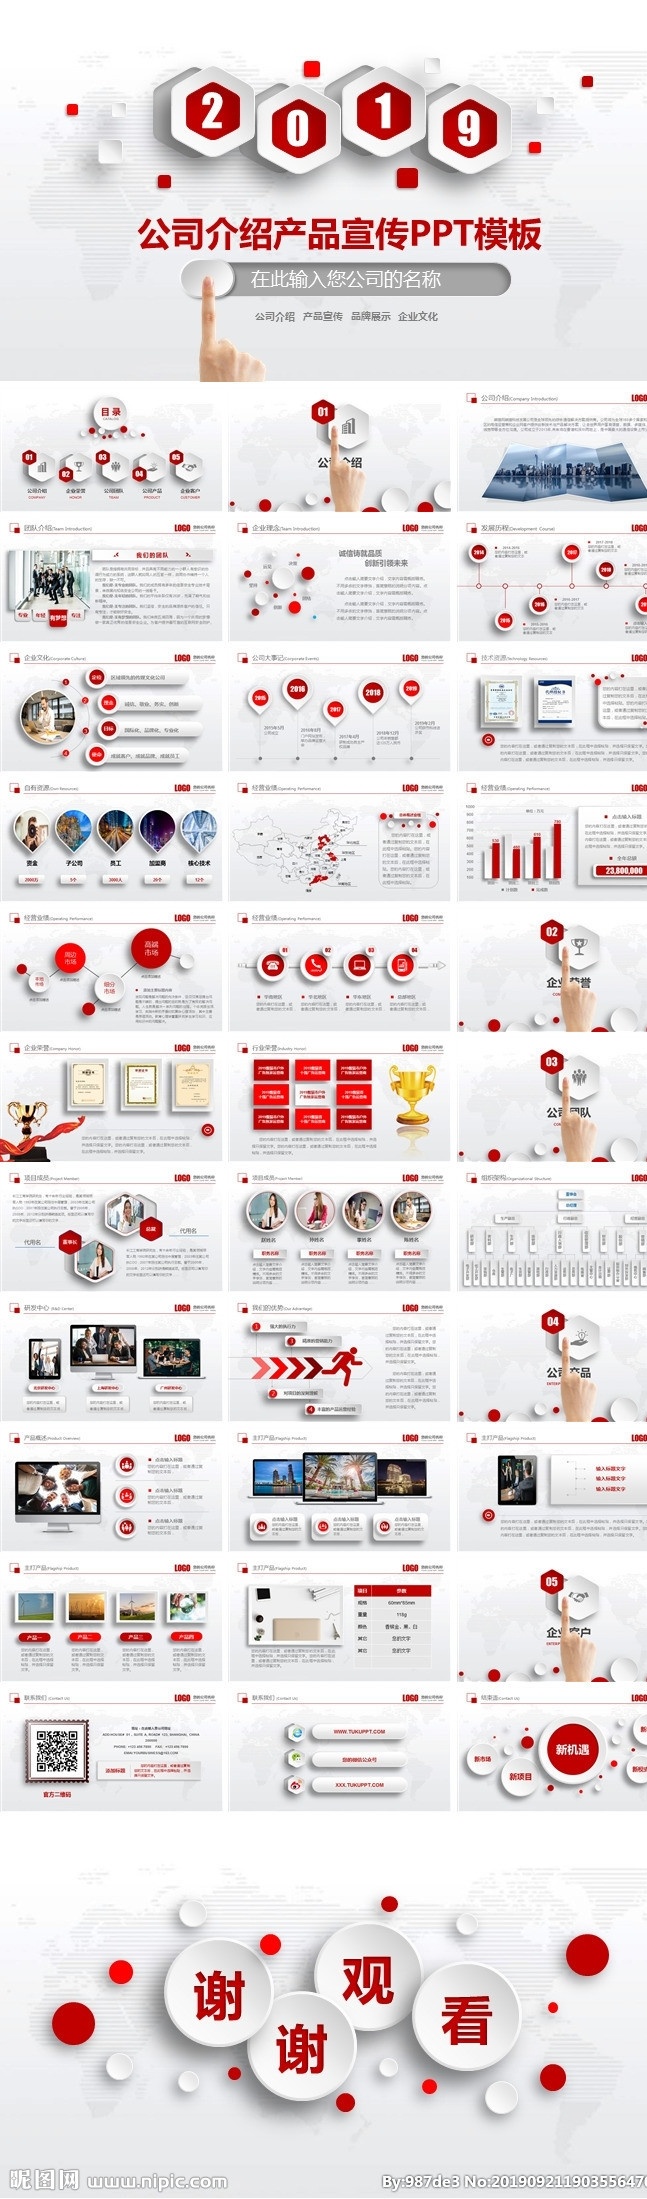 红色 风格 公司 介绍产品 宣传 红色风格 公司介绍 产品宣传 通用模板 多媒体 商务科技 pptx